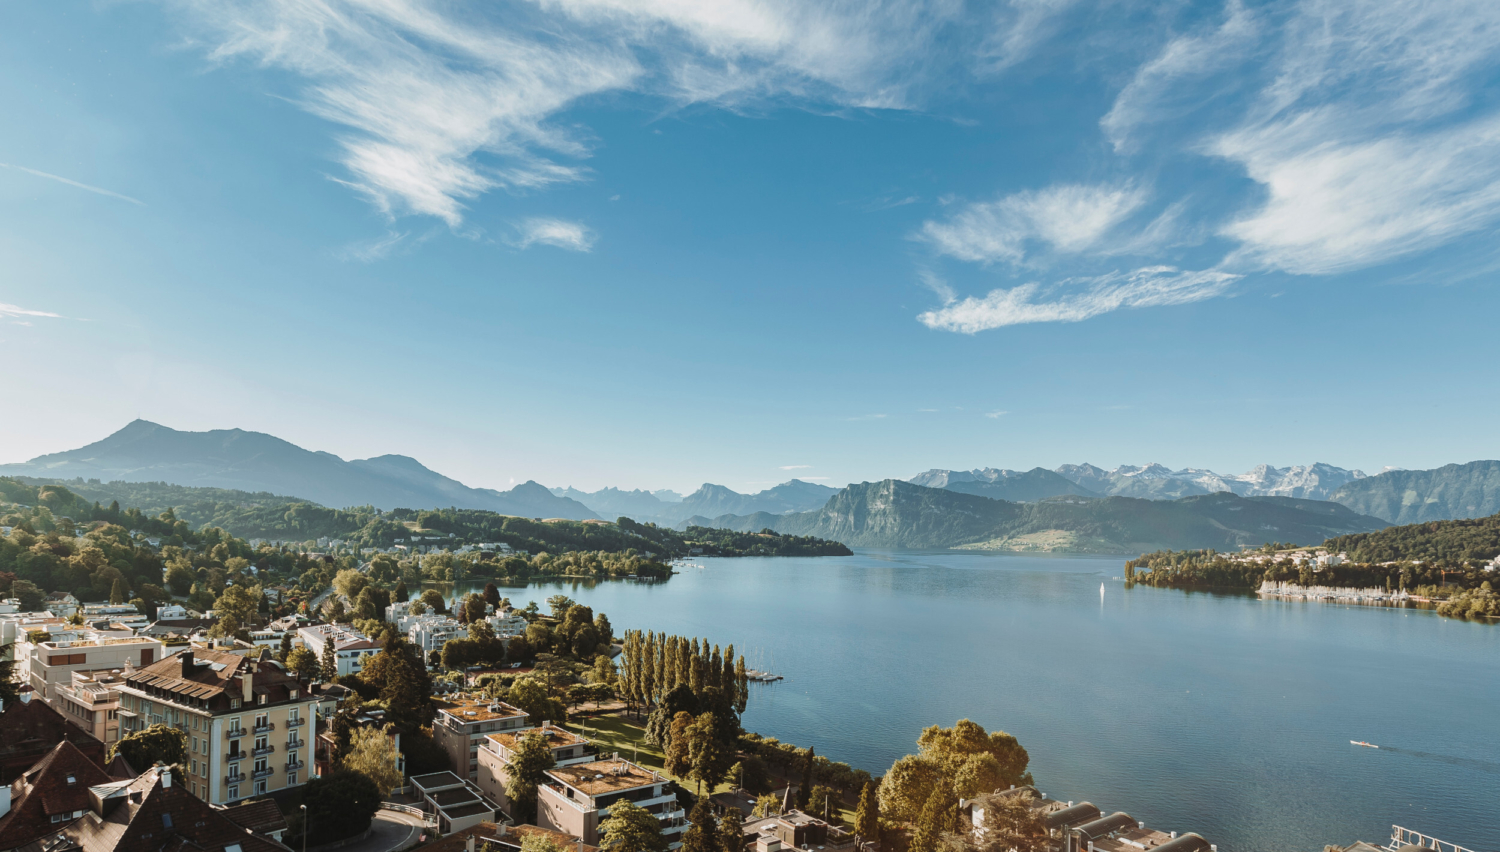 Stadt, See, Berg - attraktives Package für Ferien in der Zentralschweiz